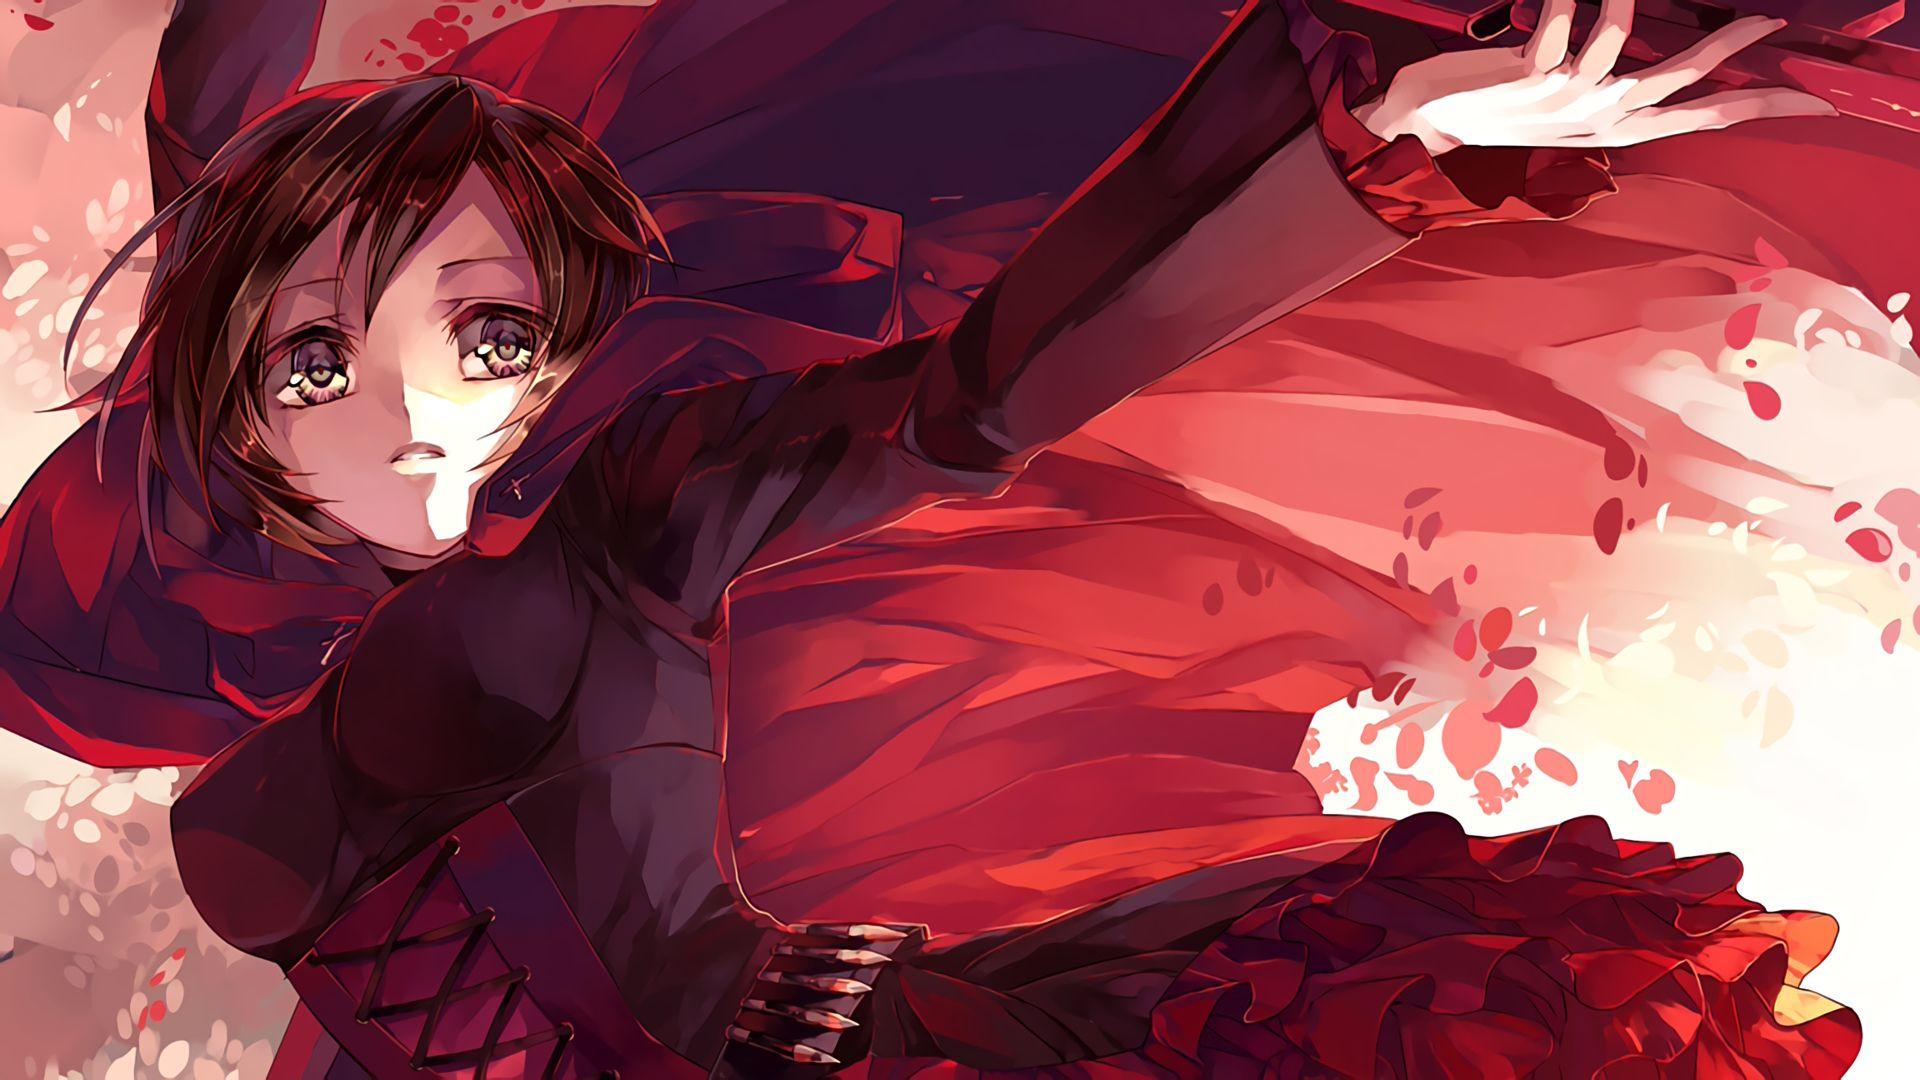 Anime RWBY Ruby Rose Wallpaper. RWBY. RWBY and Anime